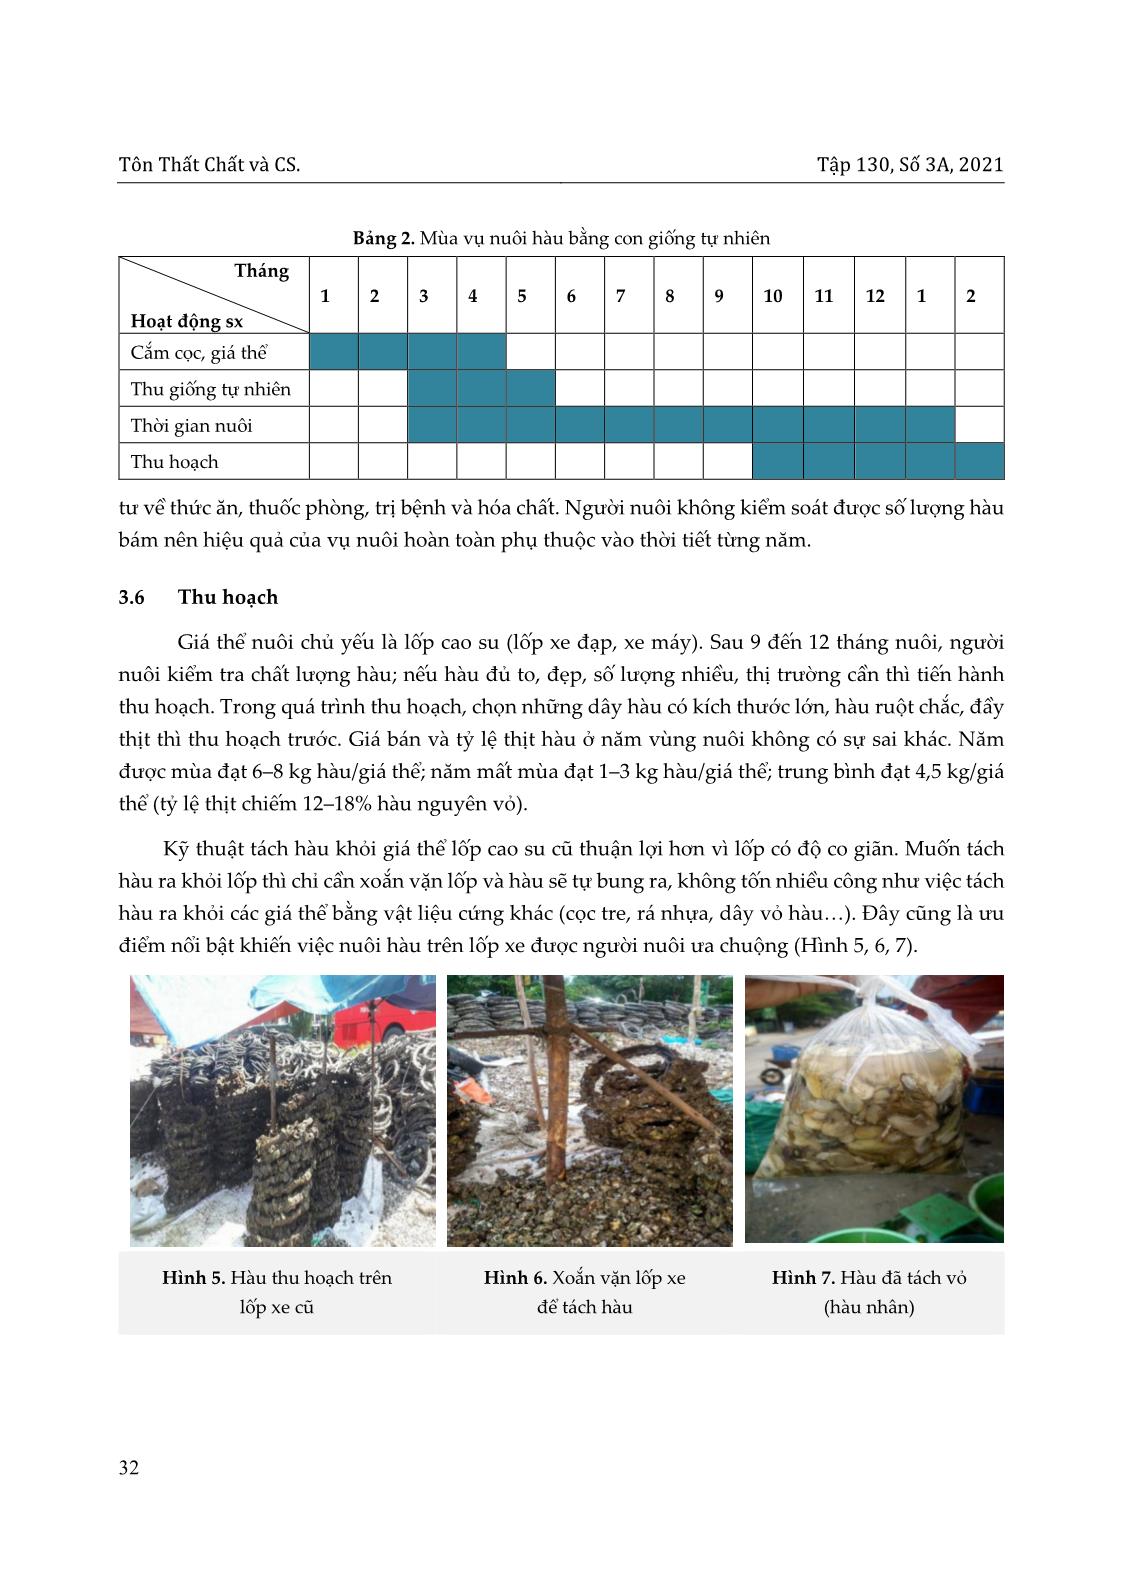 Hiện trạng nuôi hàu tại đầm Lập an, thị trấn lăng cô huyện Phú Lộc, tỉnh Thừa Thiên Huế trang 8